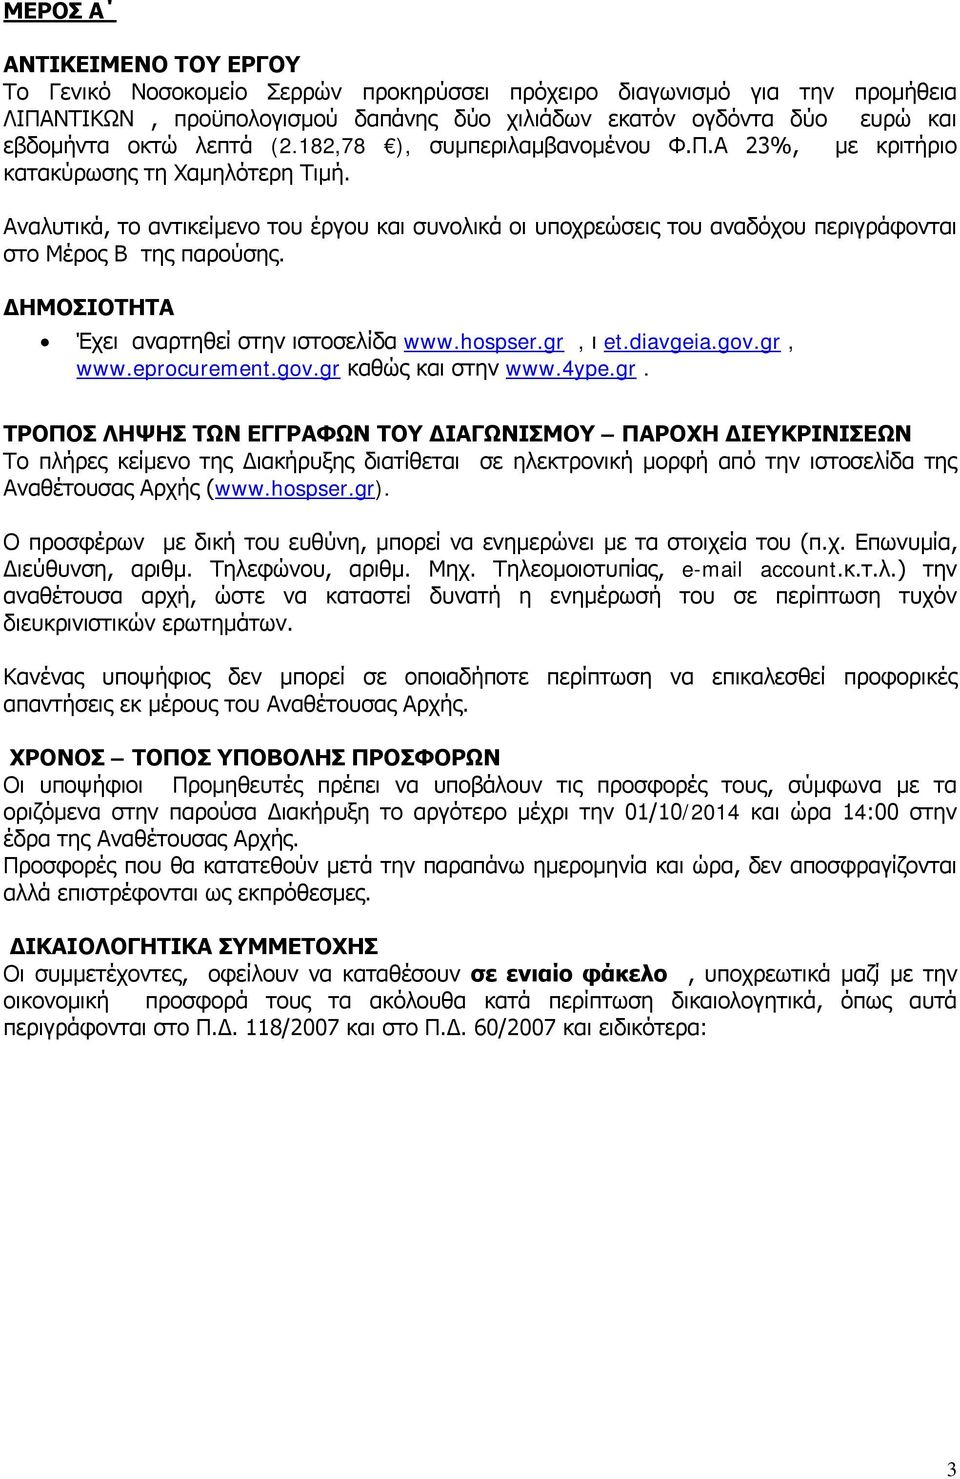 Αναλυτικά, το αντικείμενο του έργου και συνολικά οι υποχρεώσεις του αναδόχου περιγράφονται στο Μέρος Β της παρούσης. ΔΗΜΟΣΙΟΤΗΤΑ Έχει αναρτηθεί στην ιστοσελίδα www.hospser.gr, ι et.diavgeia.gov.